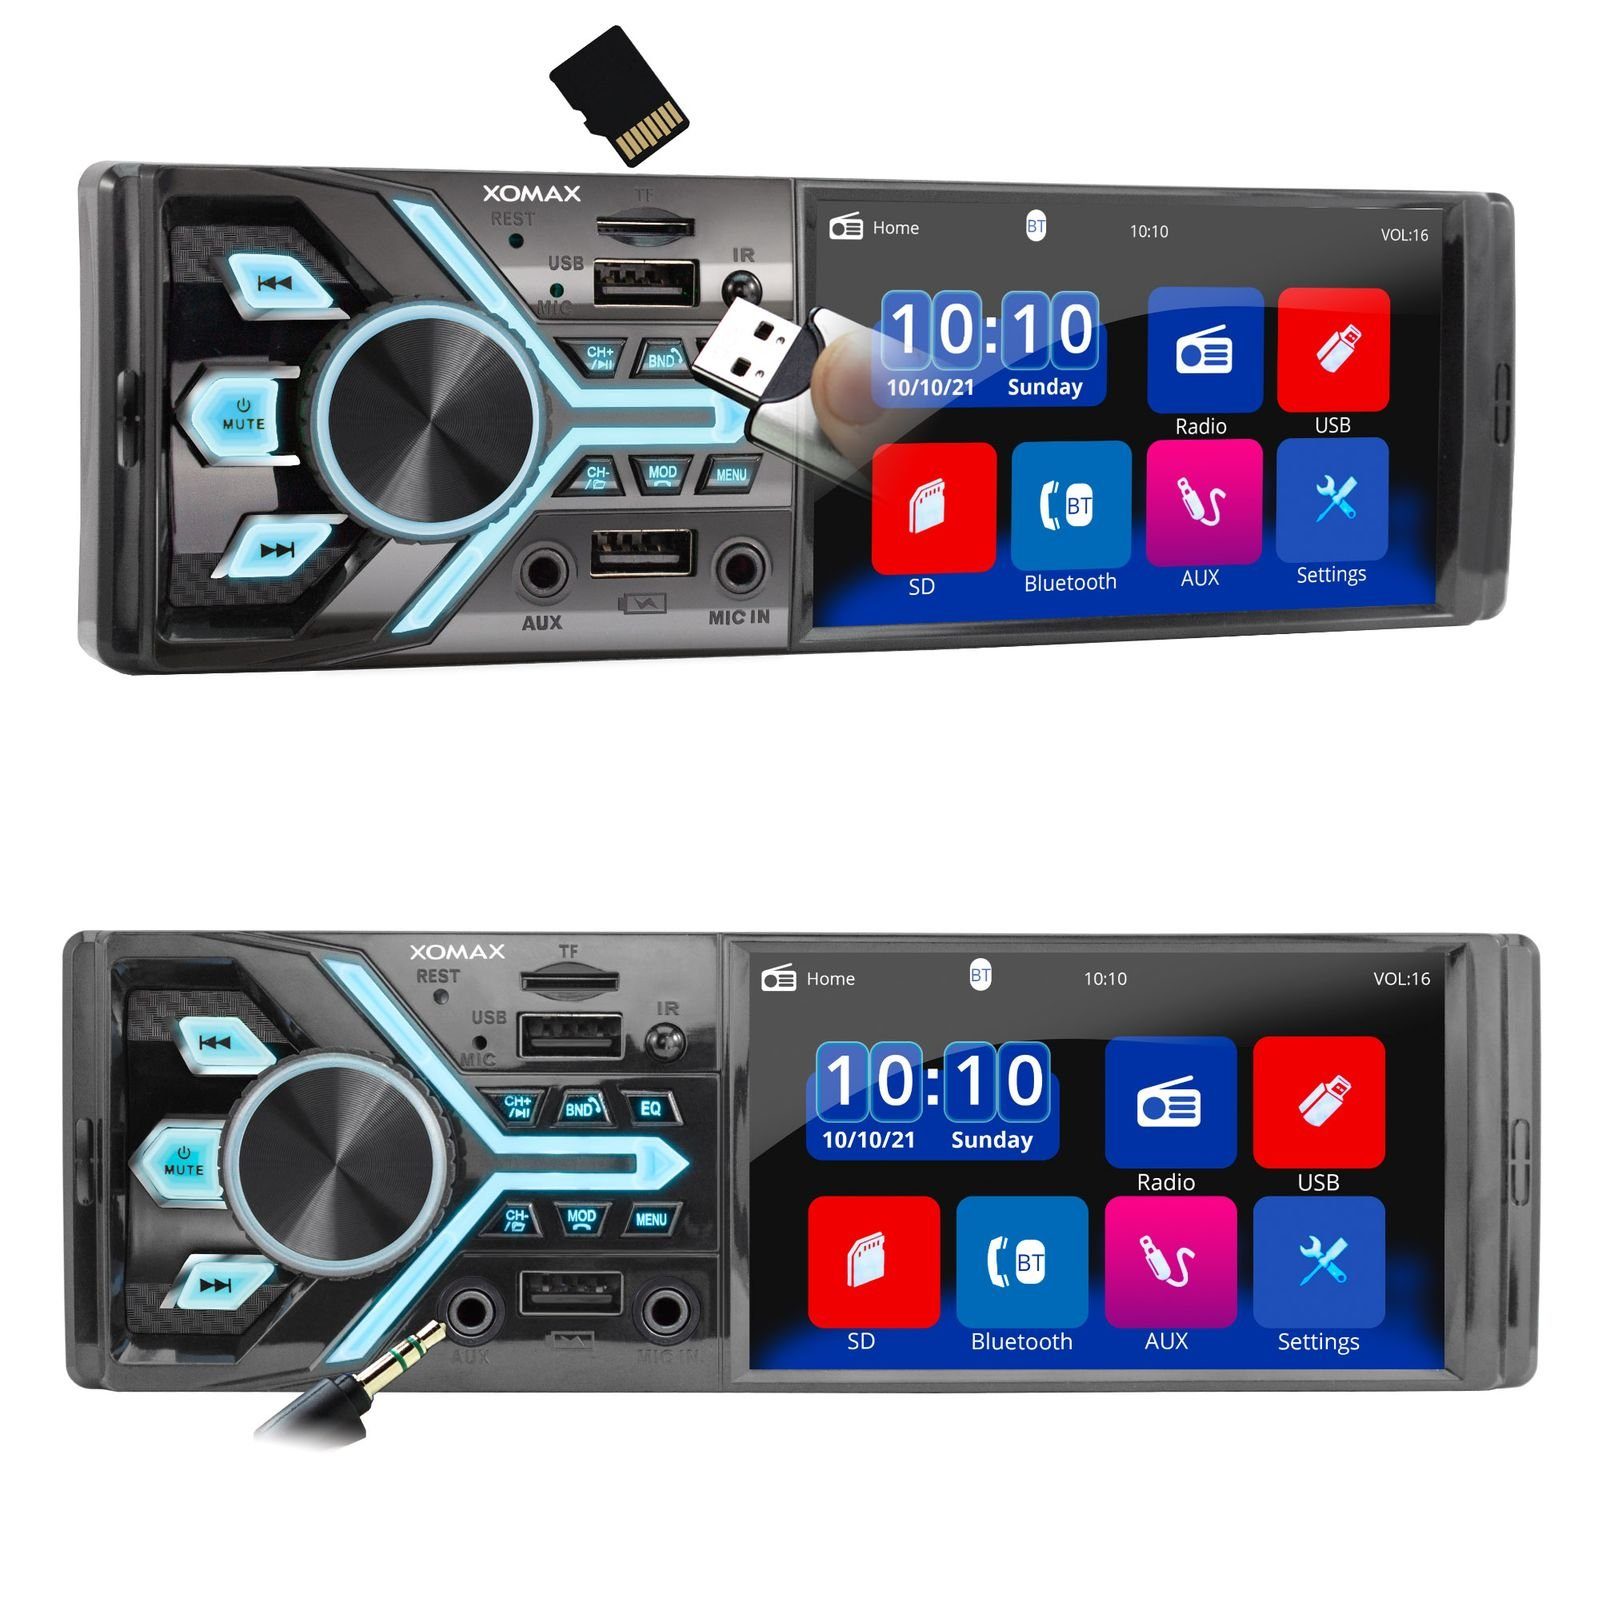 XOMAX XM-2R421 Autoradio mit Bluetooth Freisprecheinrichtung, USB und  AUX-IN, 2 DIN